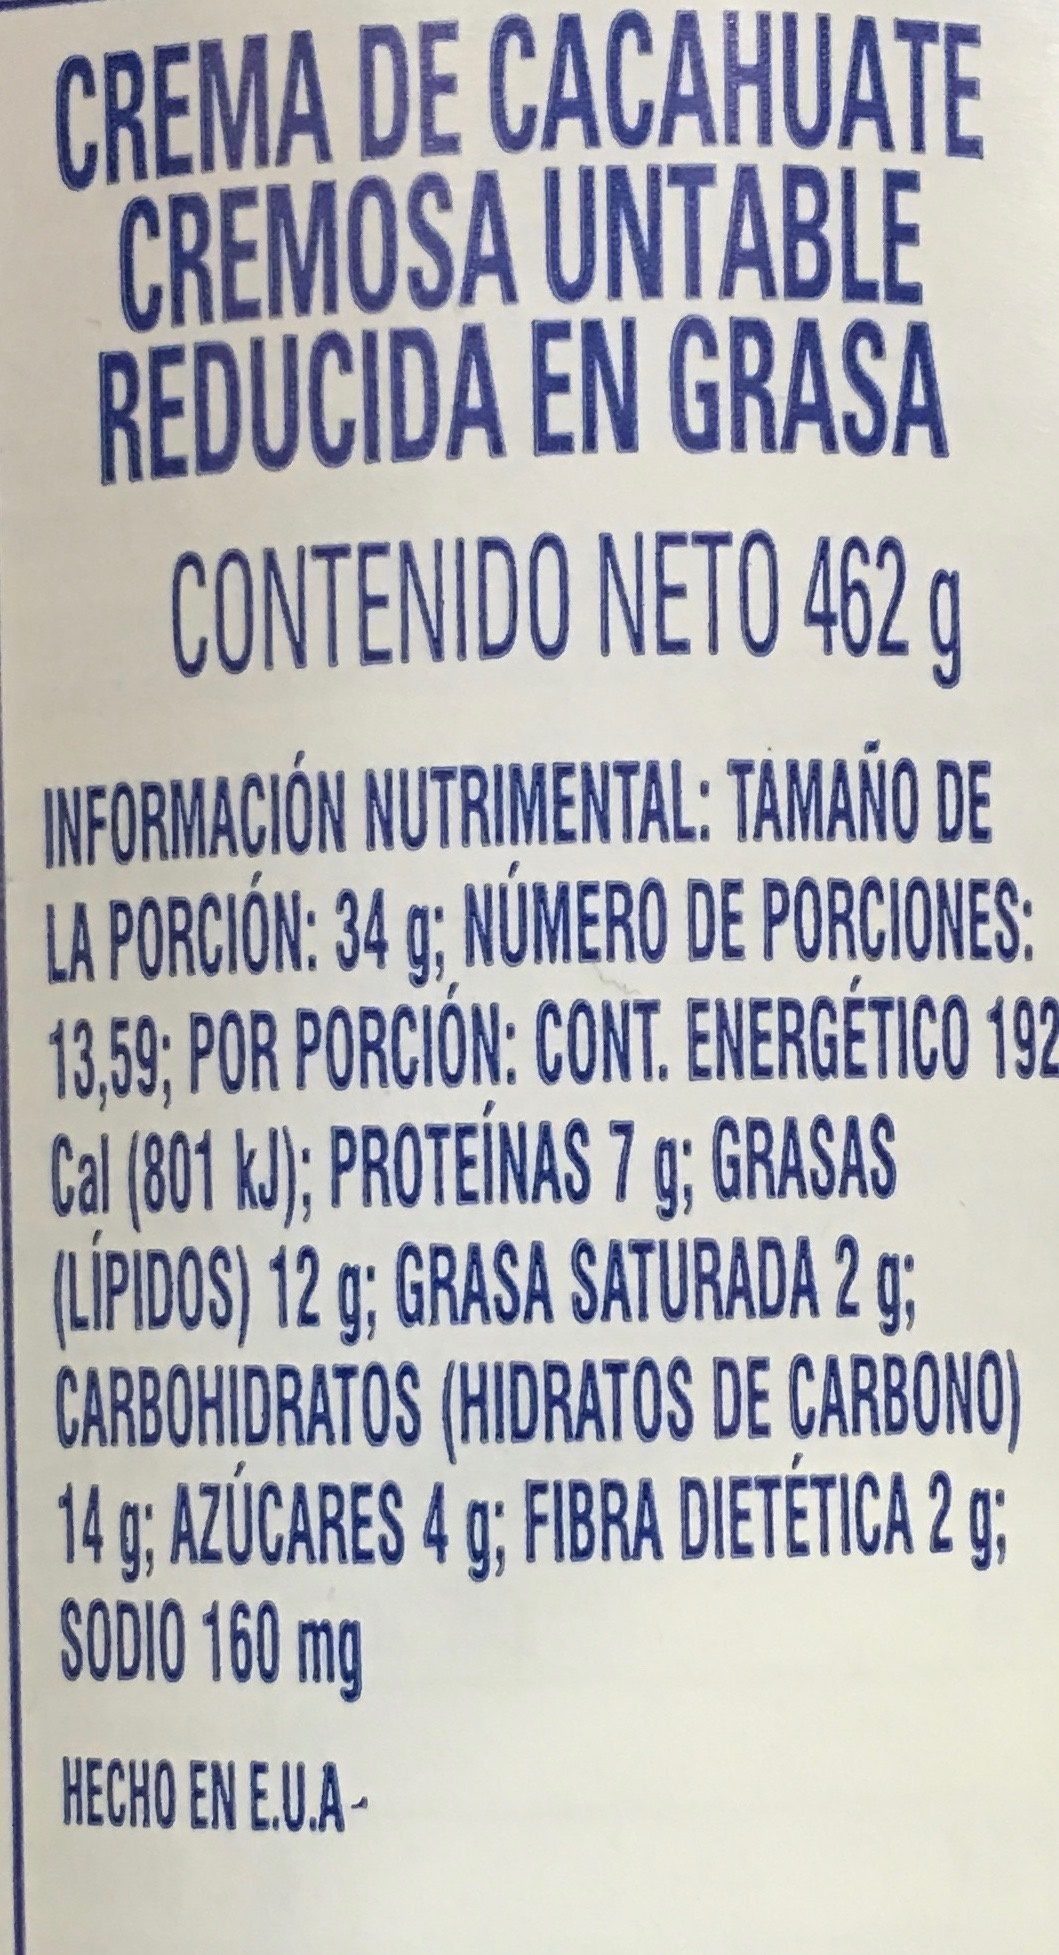 Reduced fat creamy peanut butter spread - Información nutricional